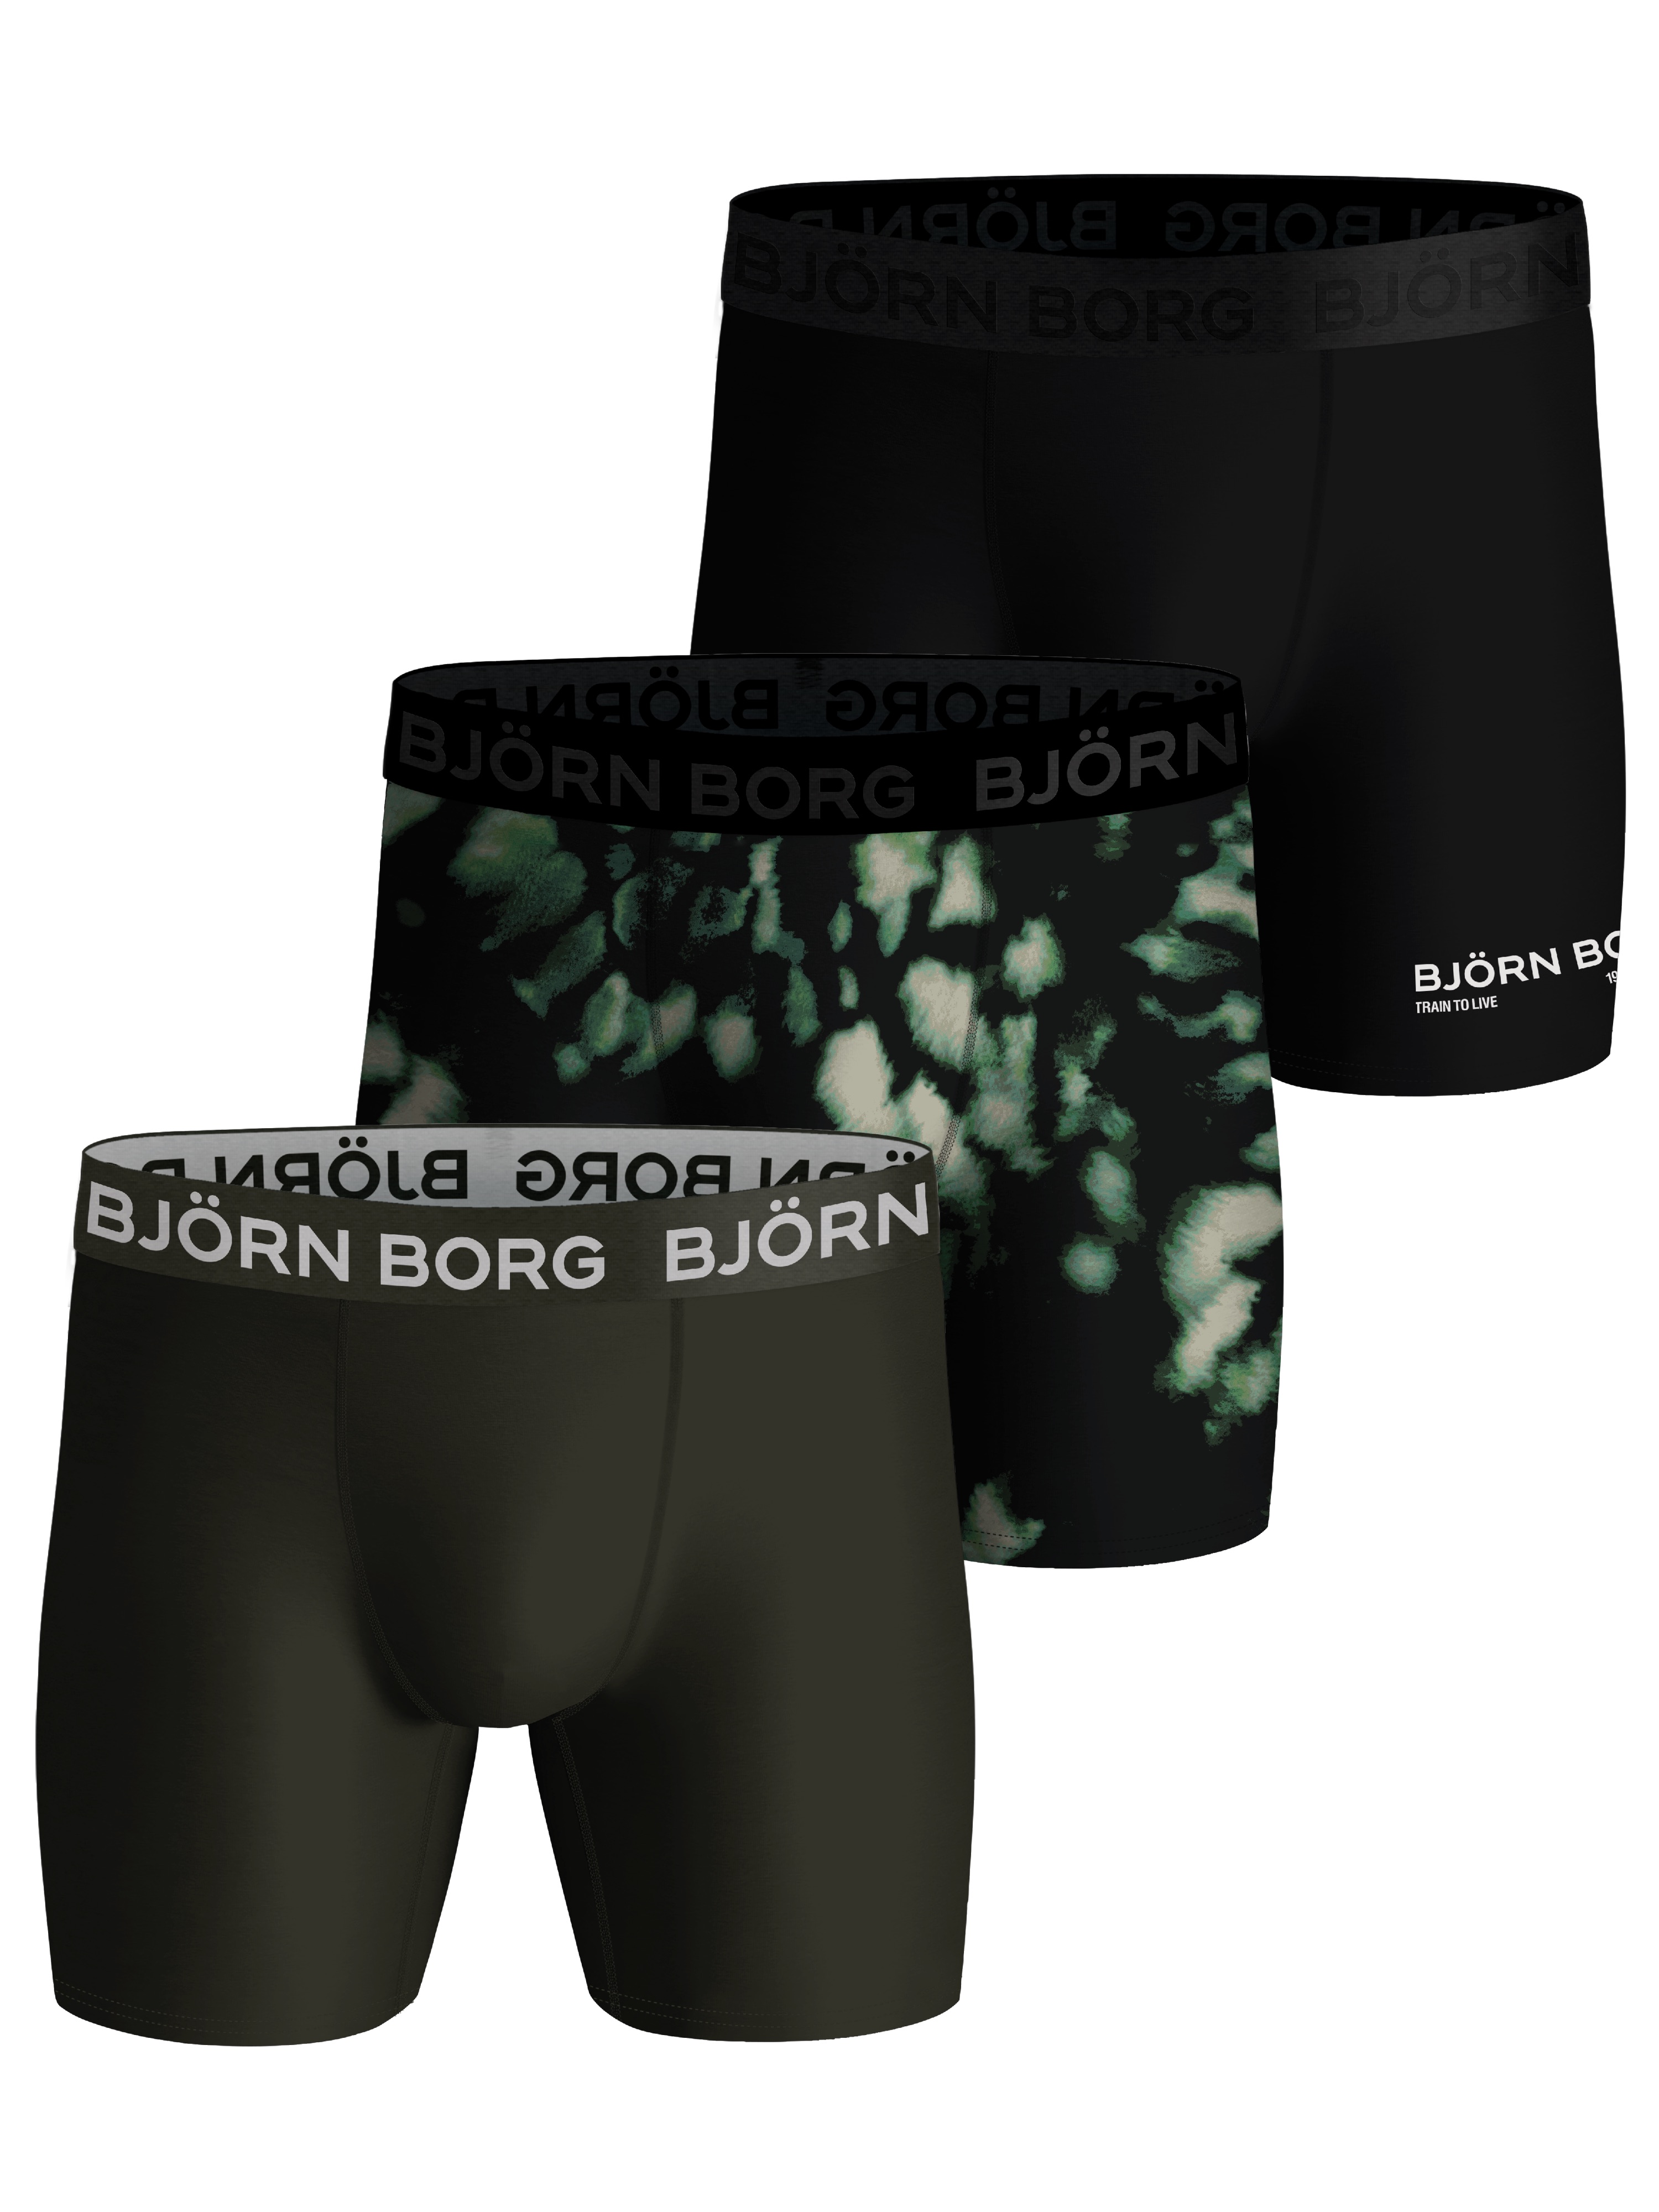 Björn Borg Björn Borg Performance Boxer 3p Multipack 2 S, Multipack 2